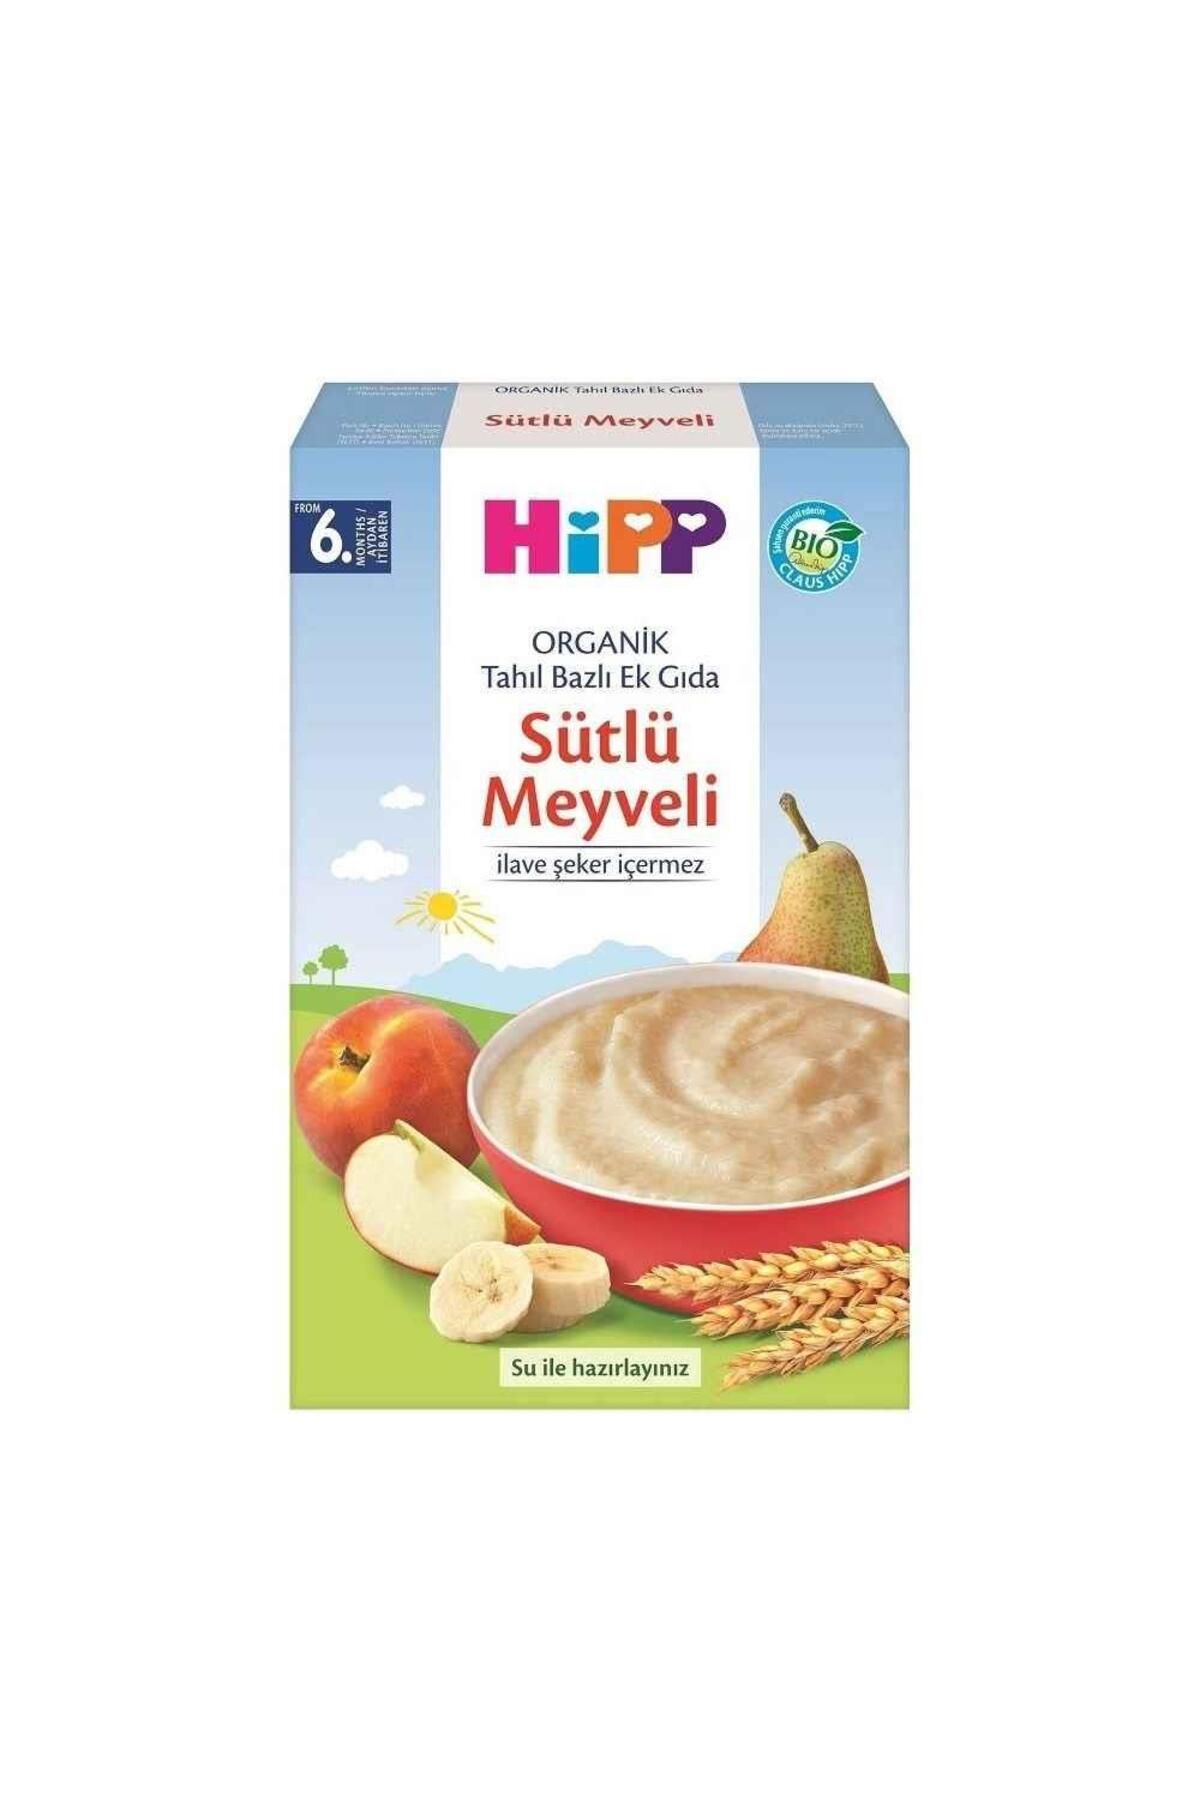 Hipp Organik Sütlü Meyveli Tahıl Bazlı Ek Gıda 250 gr